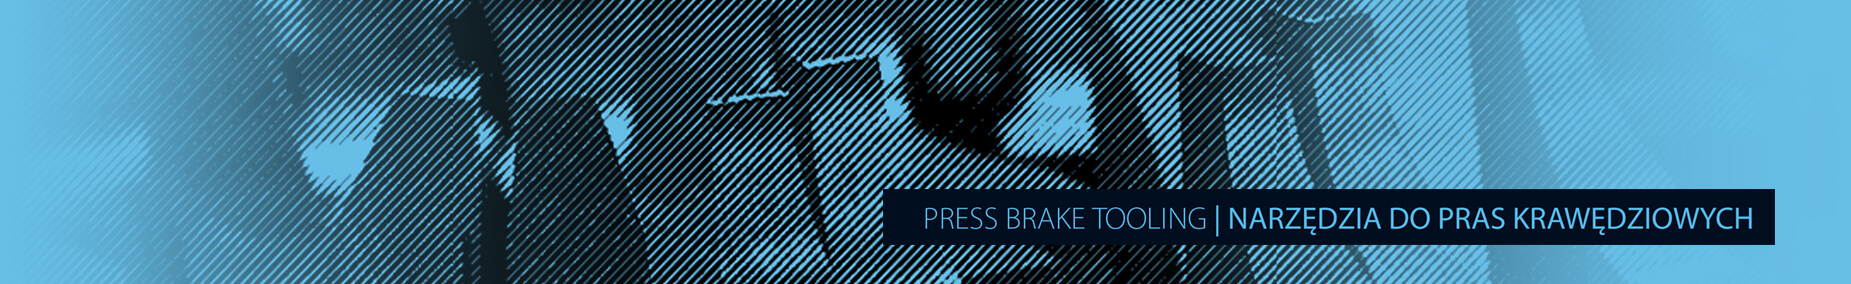 Plasmet – press brake tool manufacturer